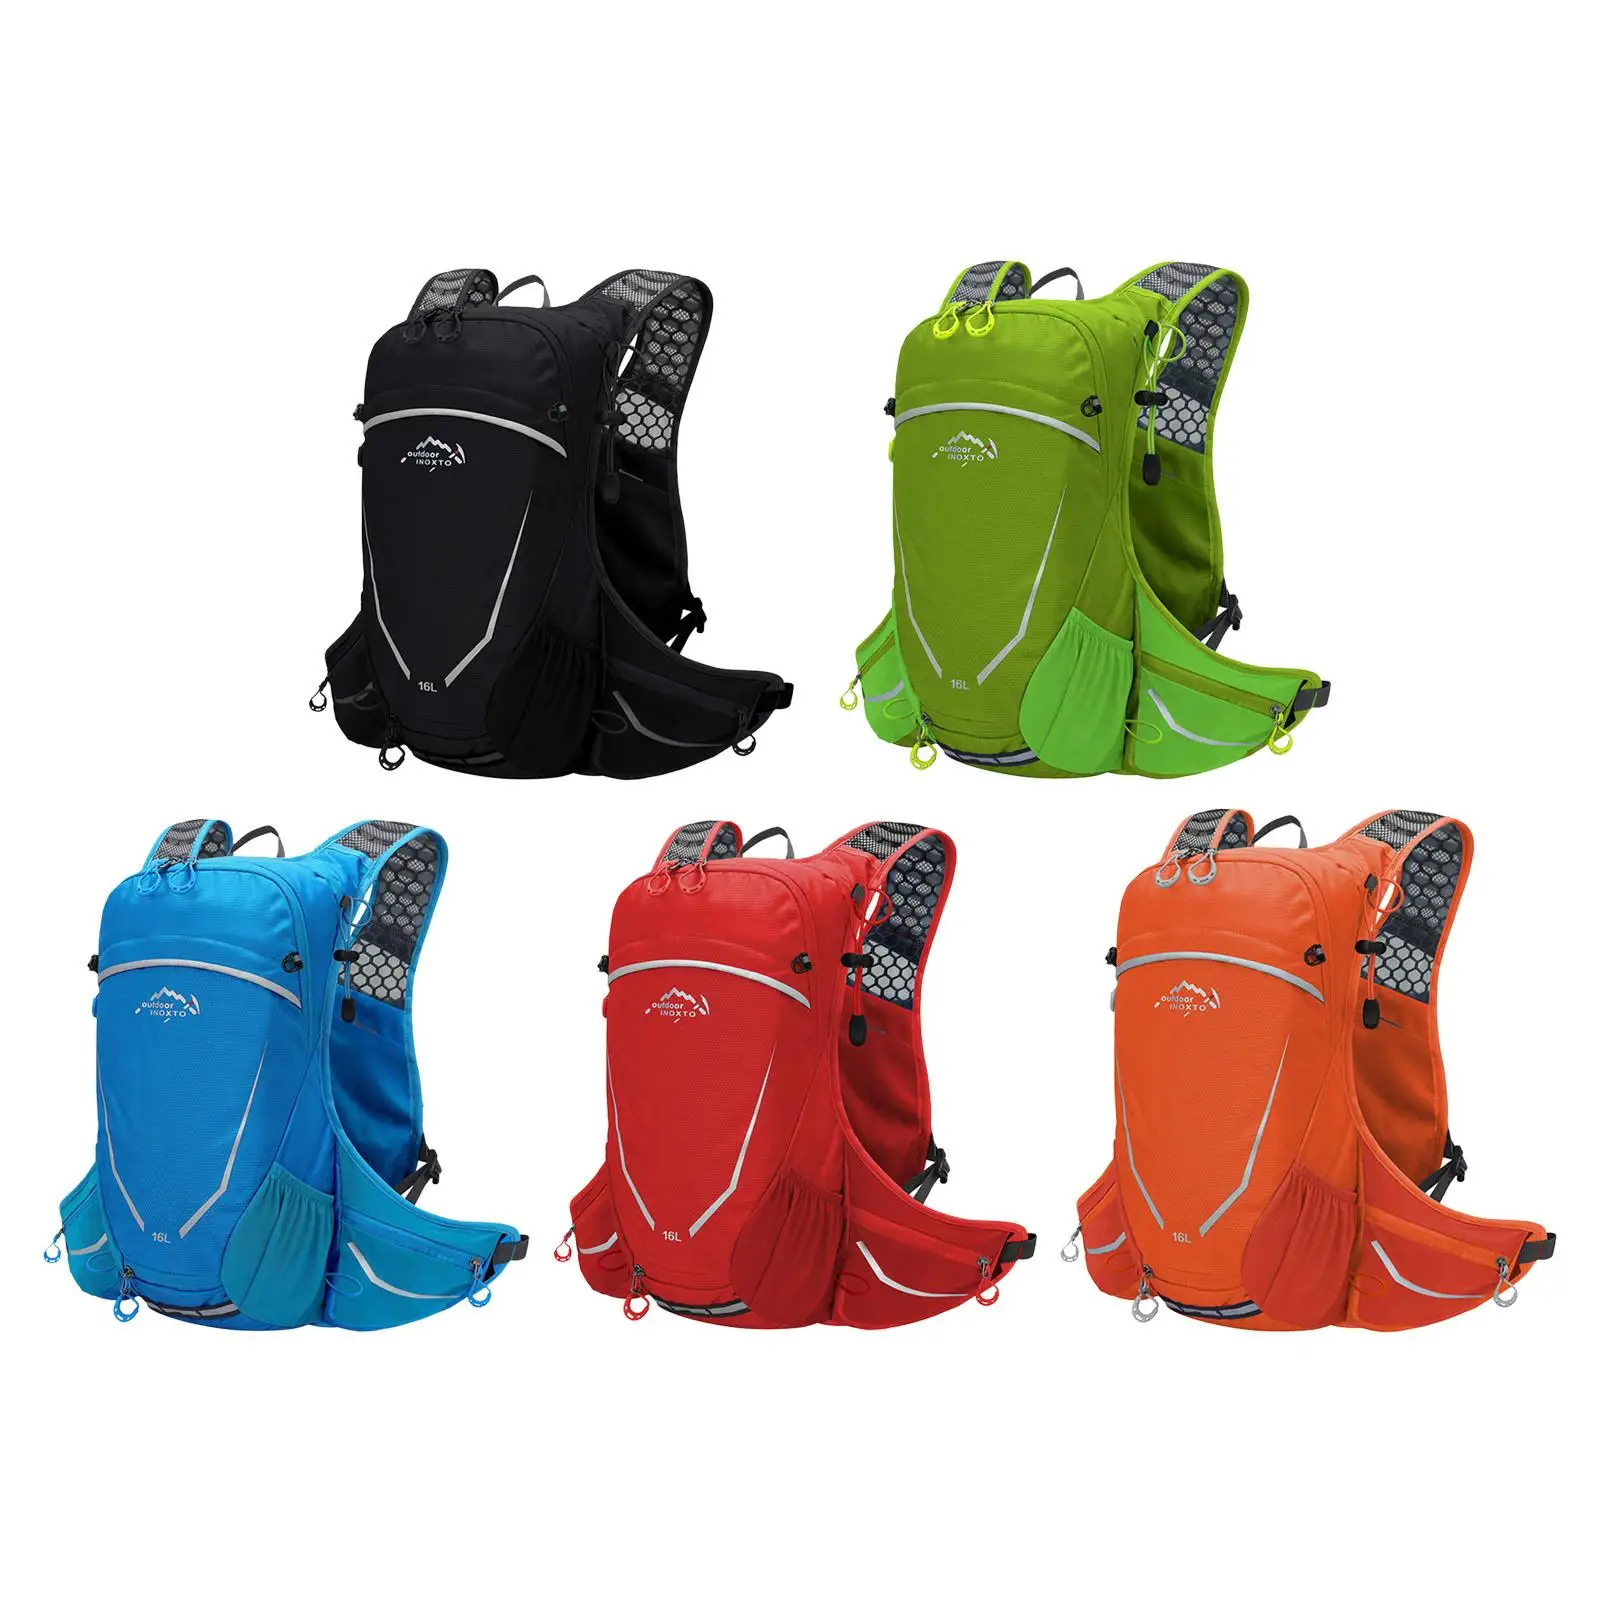 

Рюкзак гидратации для мужчин и женщин, регулируемый ранец на 16 л для кемпинга, езды на открытом воздухе, велоспорта, скалолазания